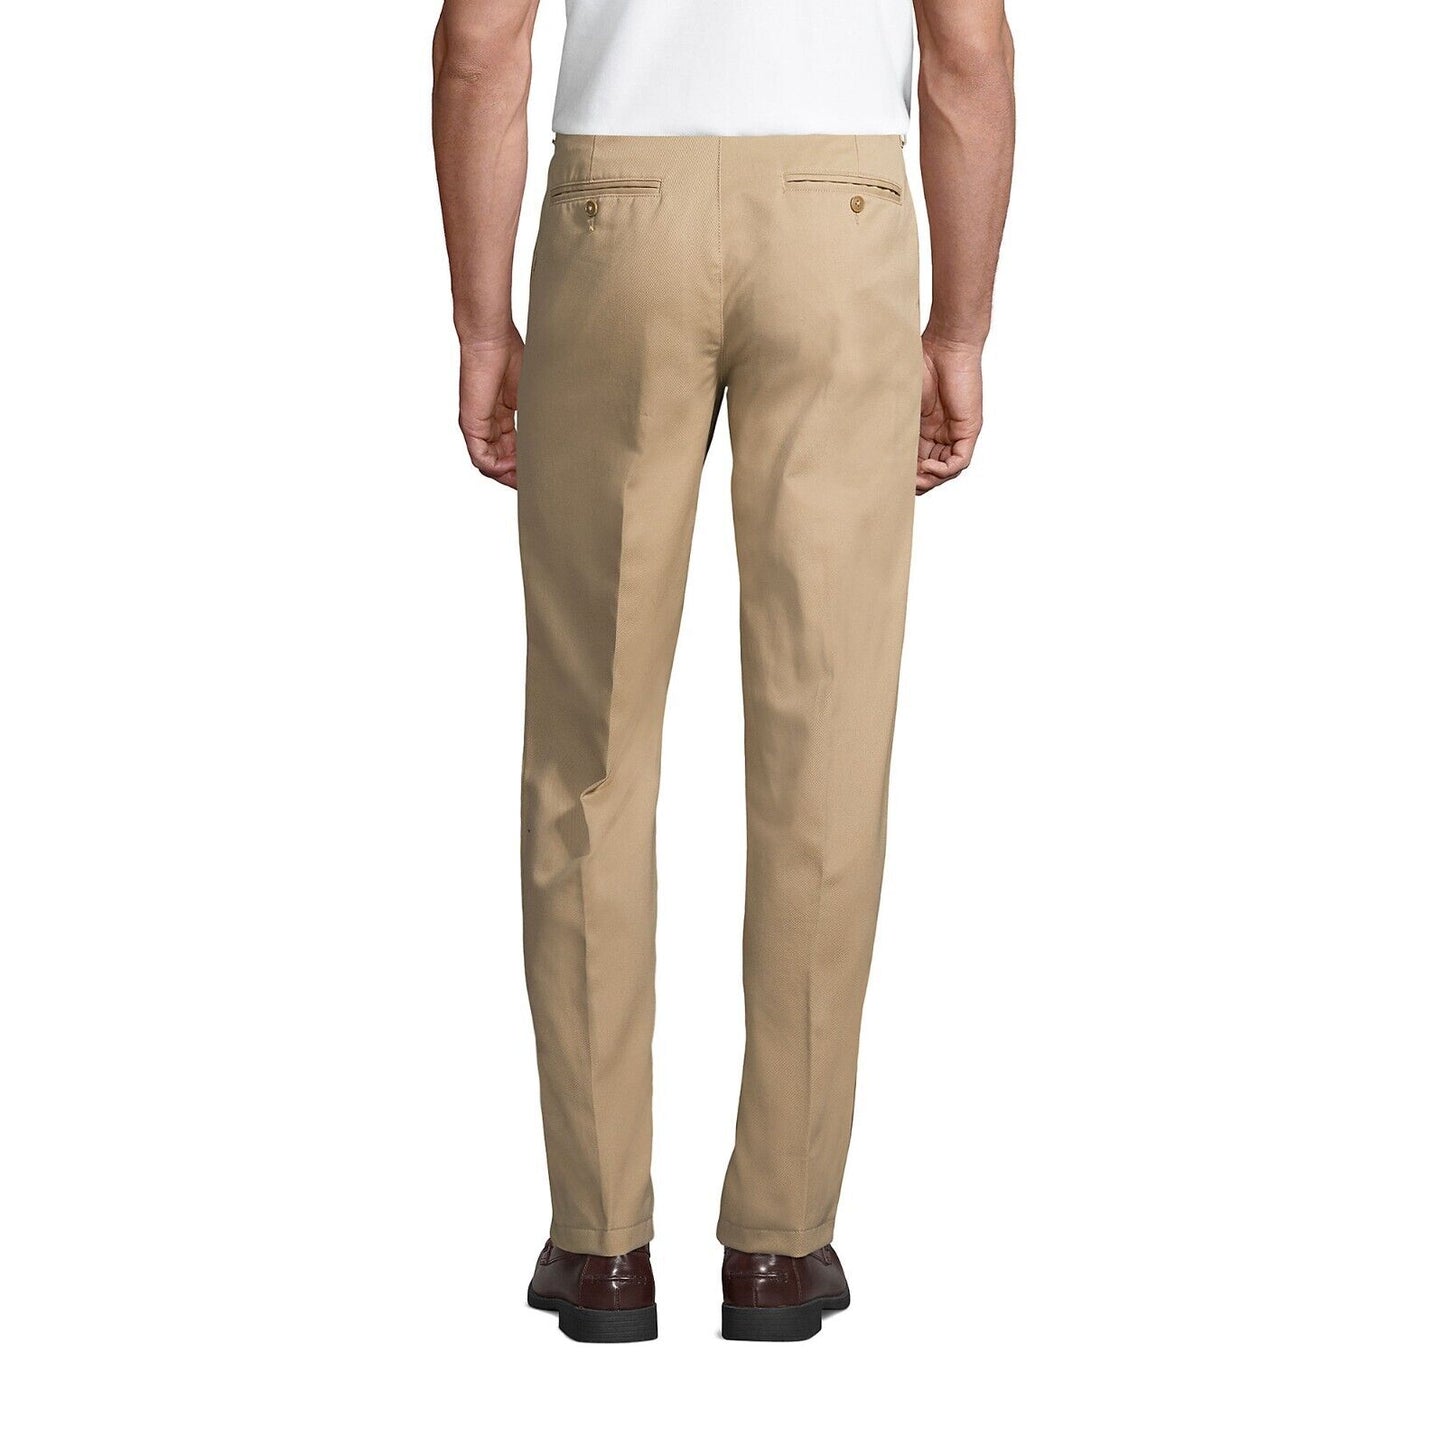 Men's Plain Front Chino Pants Size 32